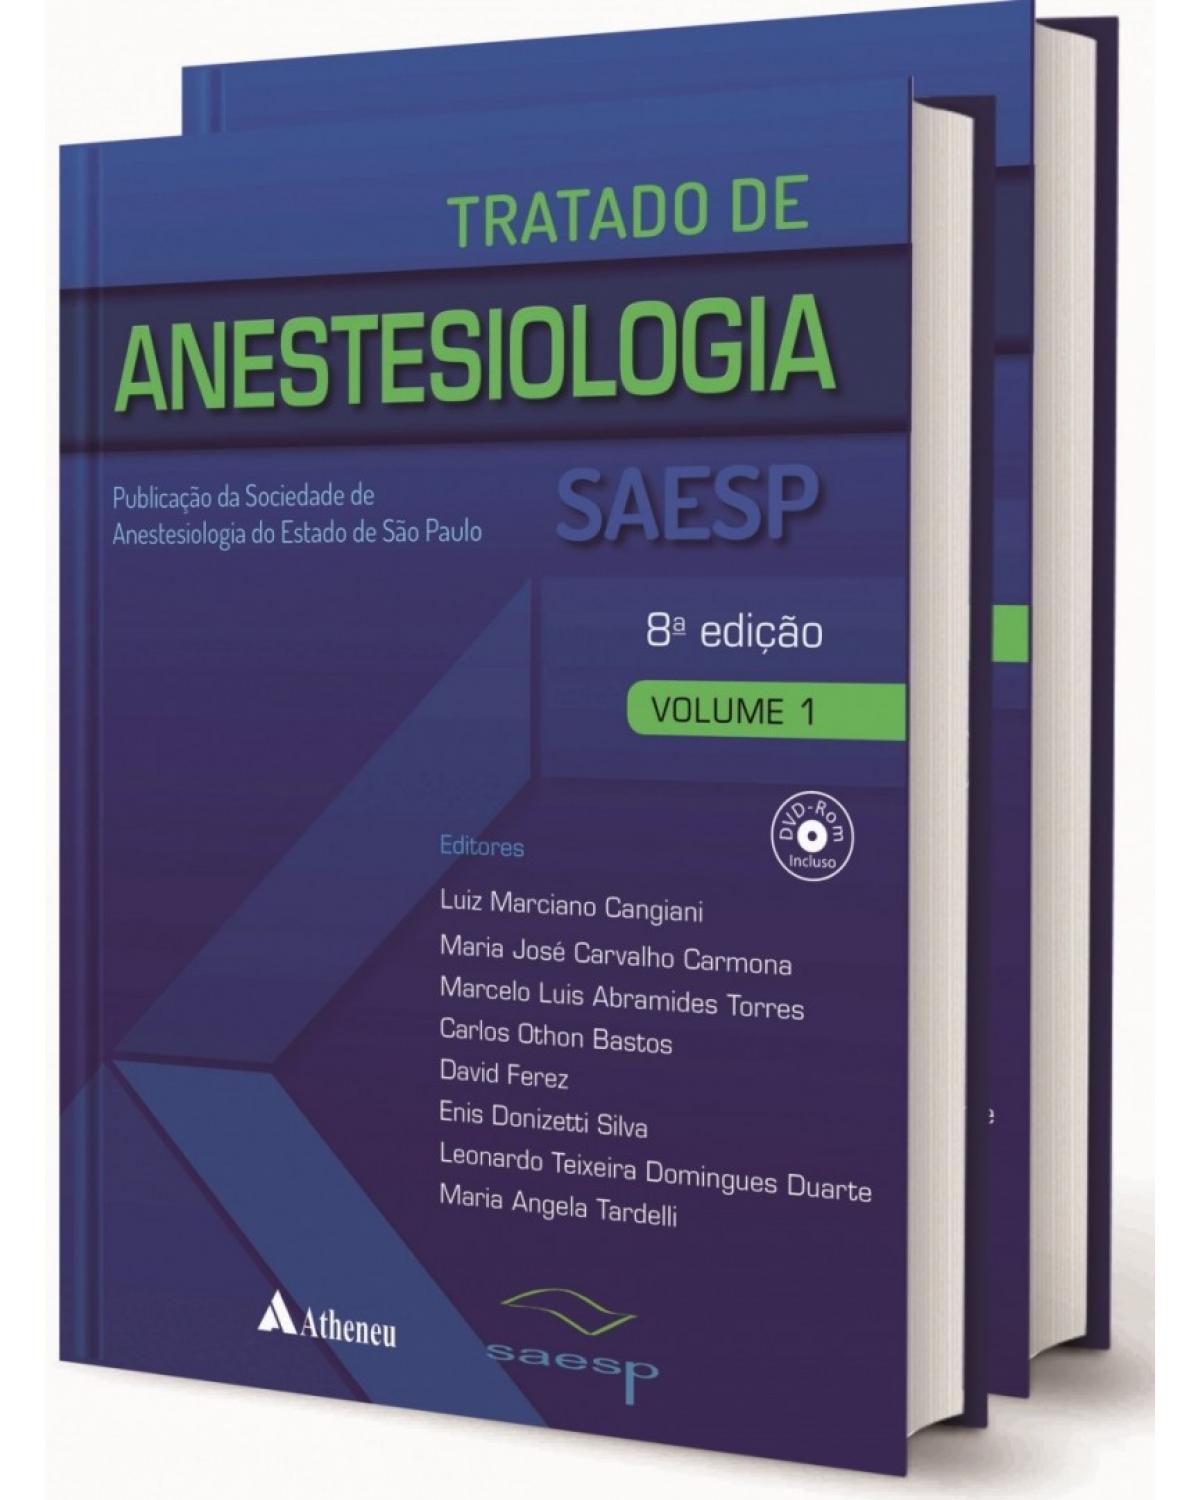 Tratado de anestesiologia SAESP - Publicação da Sociedade de Anestesiologia do Estado de São Paulo - 8ª Edição | 2017